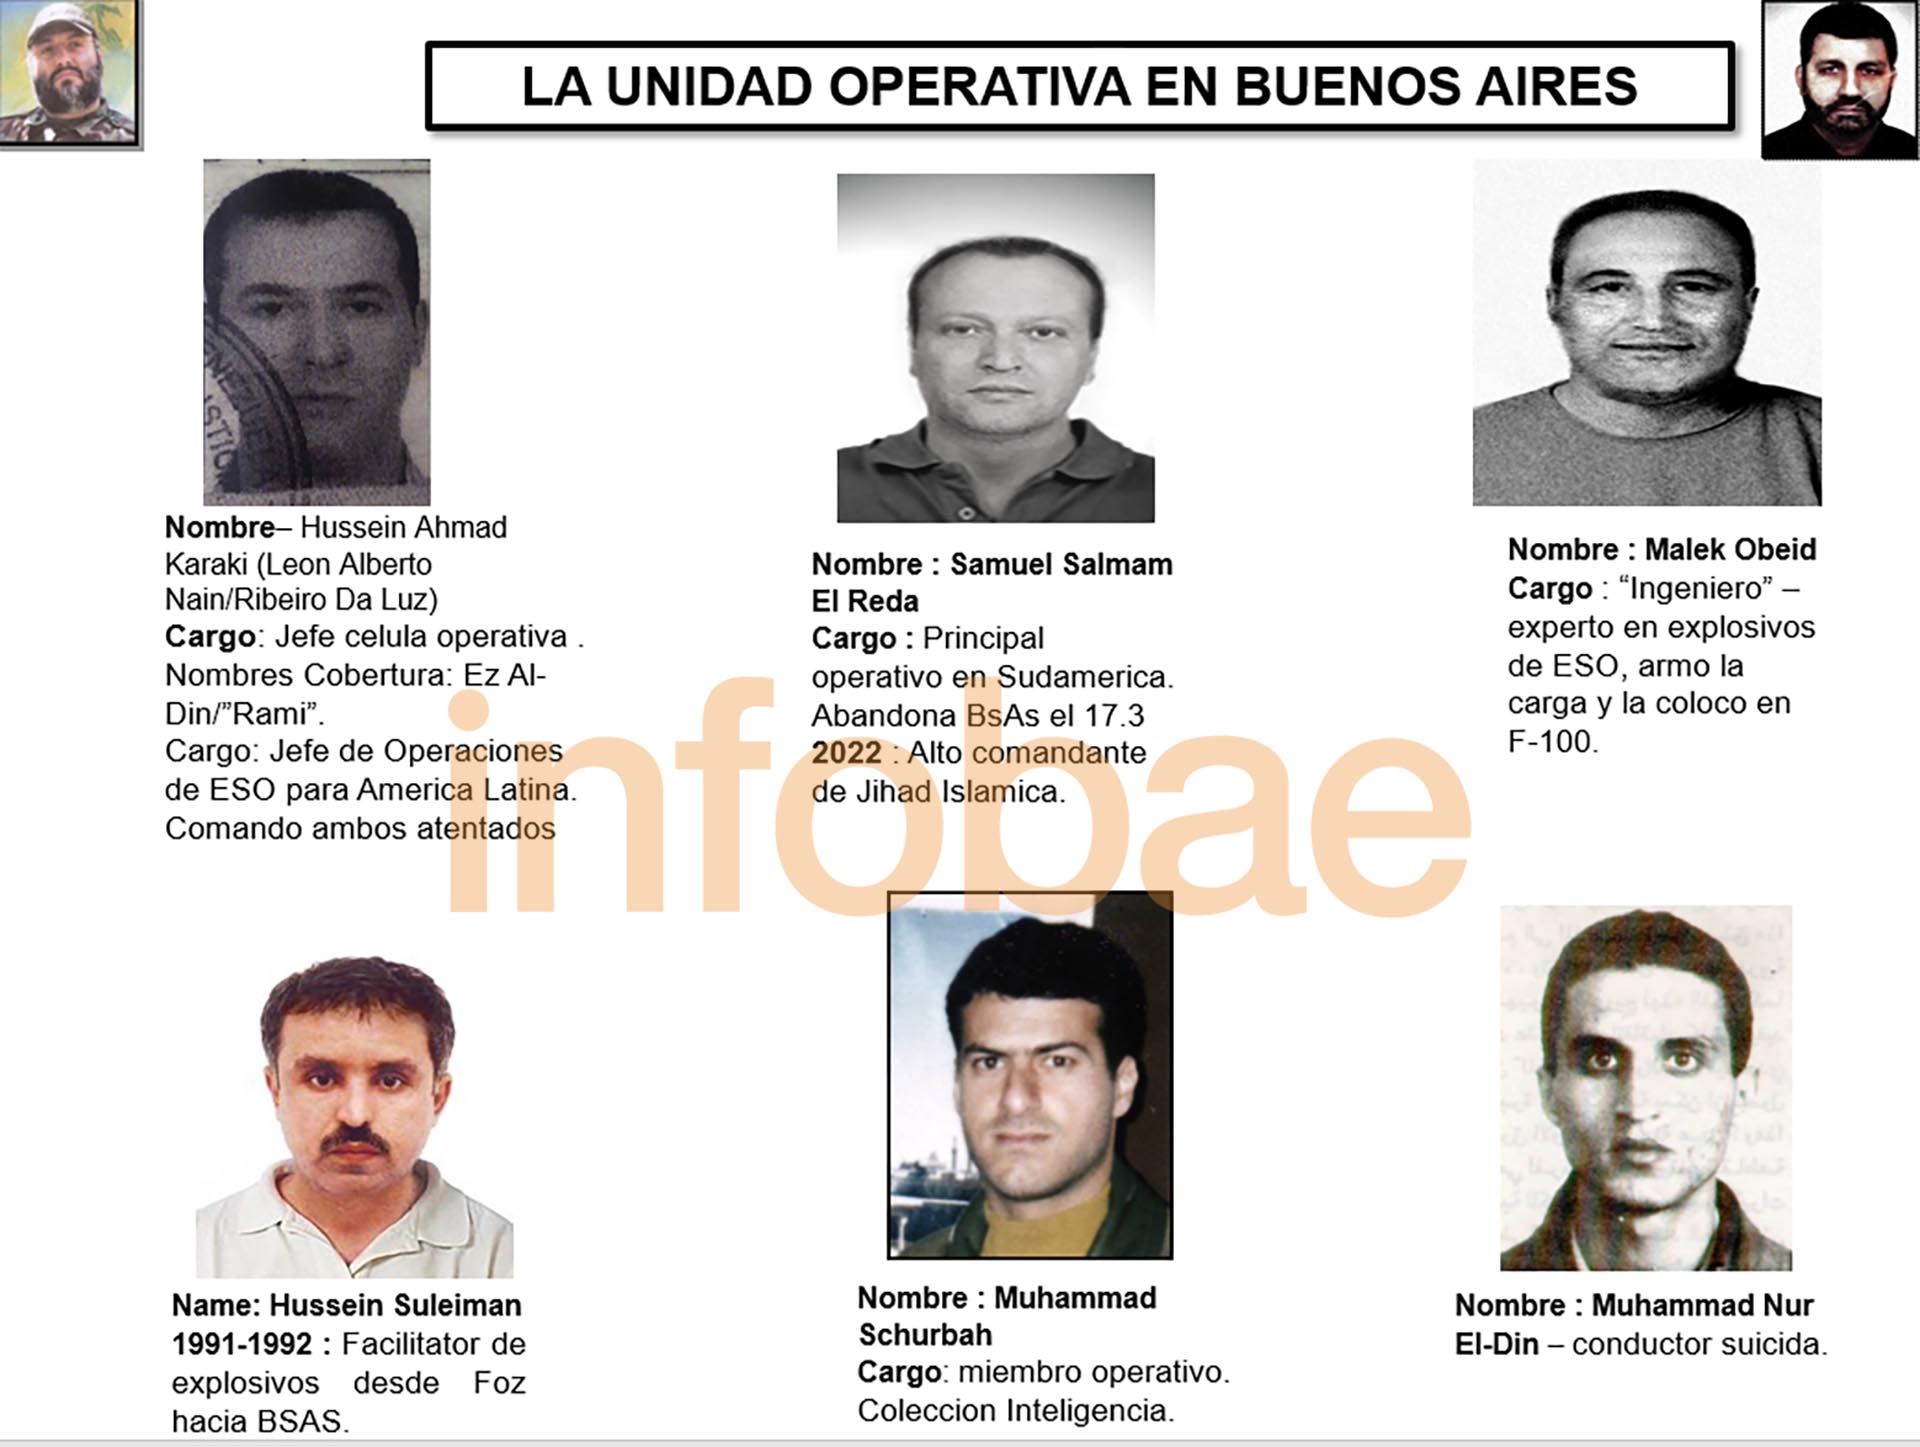 El conductor suicida (below a la derecha) aparece como parte de la unidad operativa en Buenos Aires 